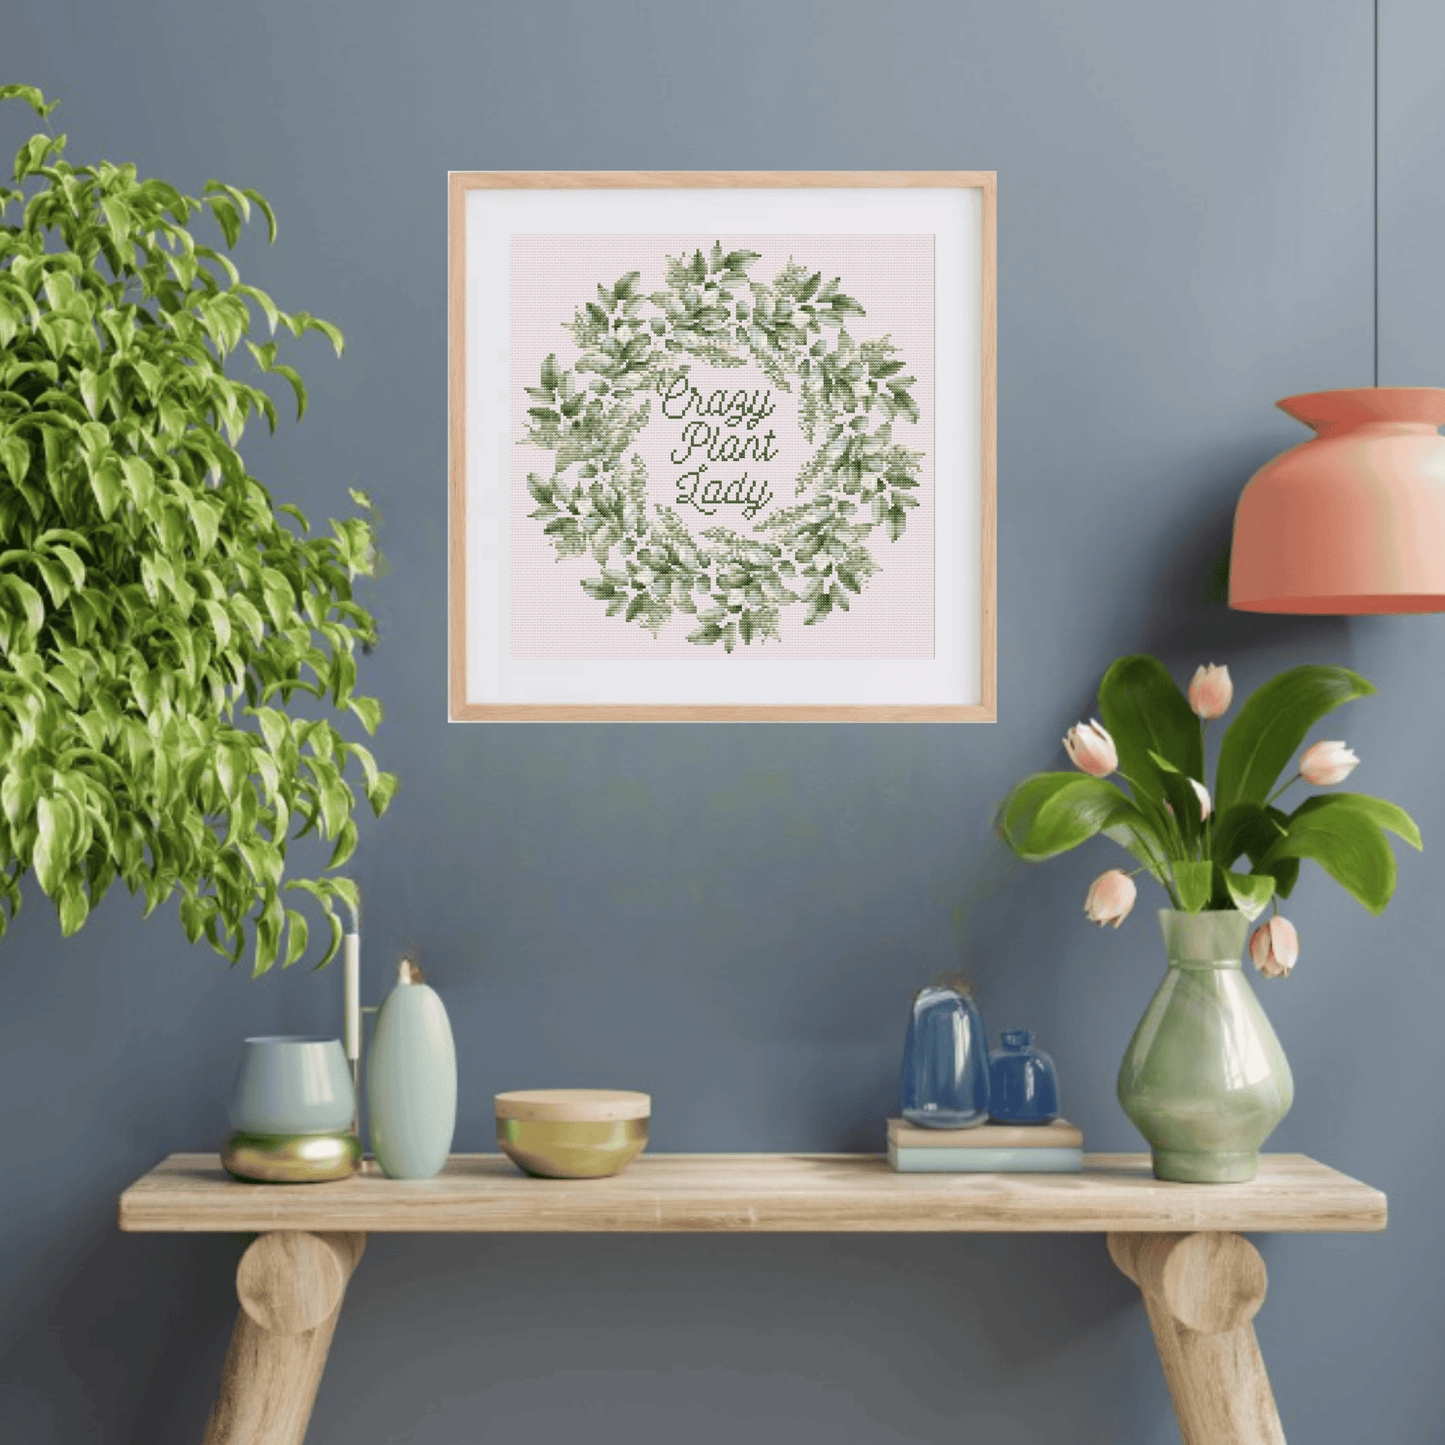 Crazy Plant Lady cross-stitch pattern | Plant cross stitch chart | Modern and pretty cross stitch ideas